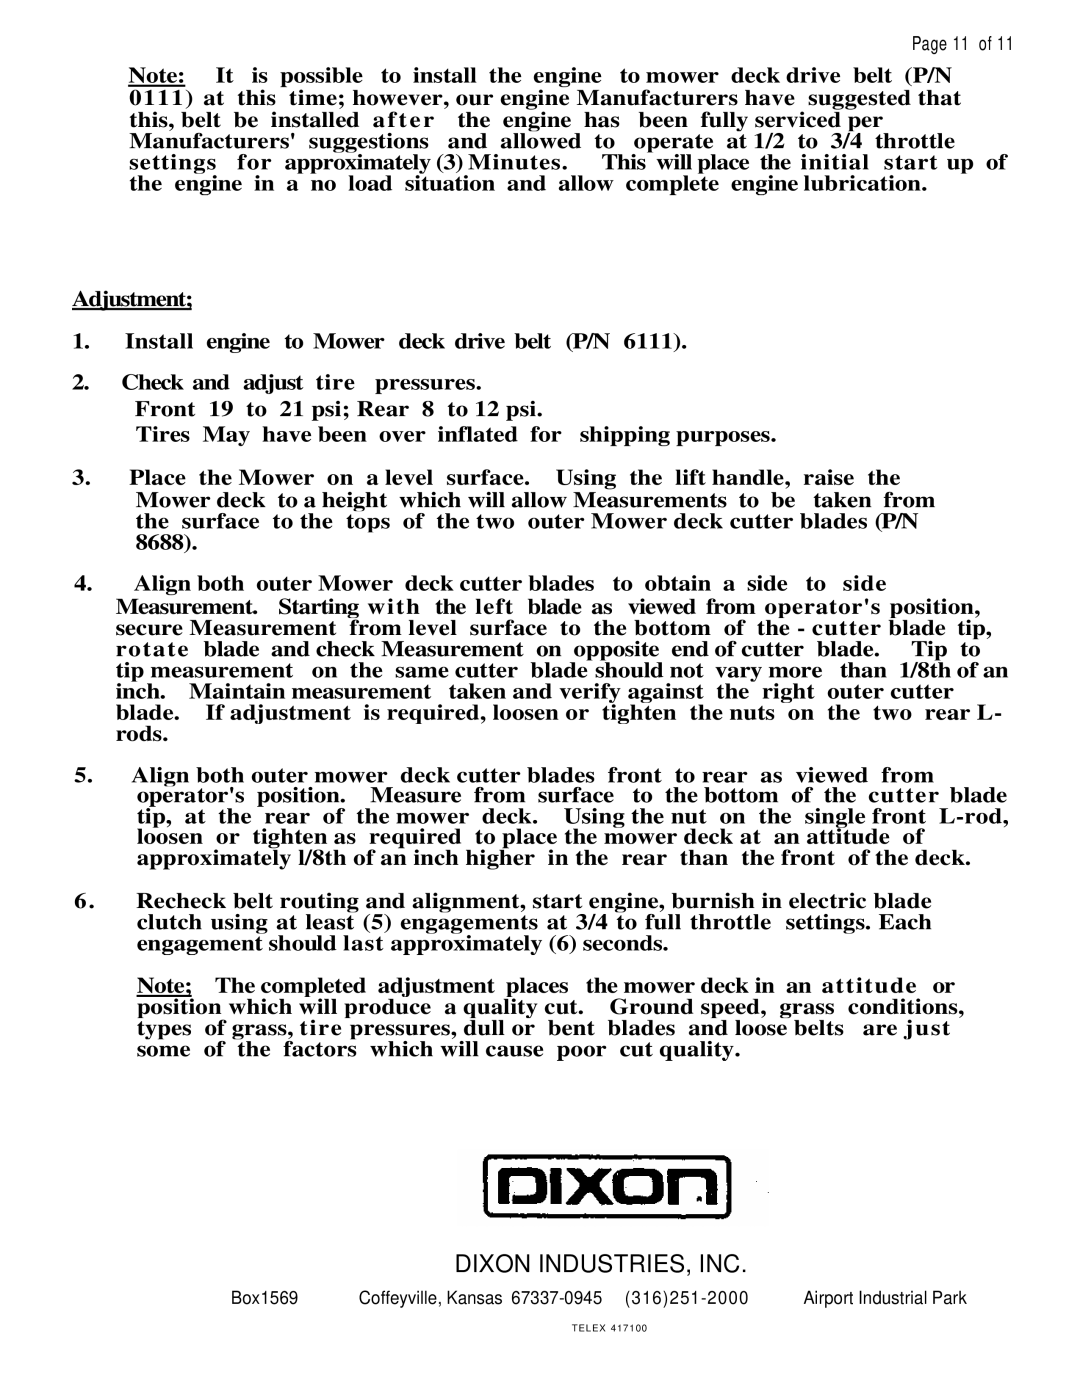 Dixon ZTR 428, ZTR 429 brochure Dixon Industries, Inc 